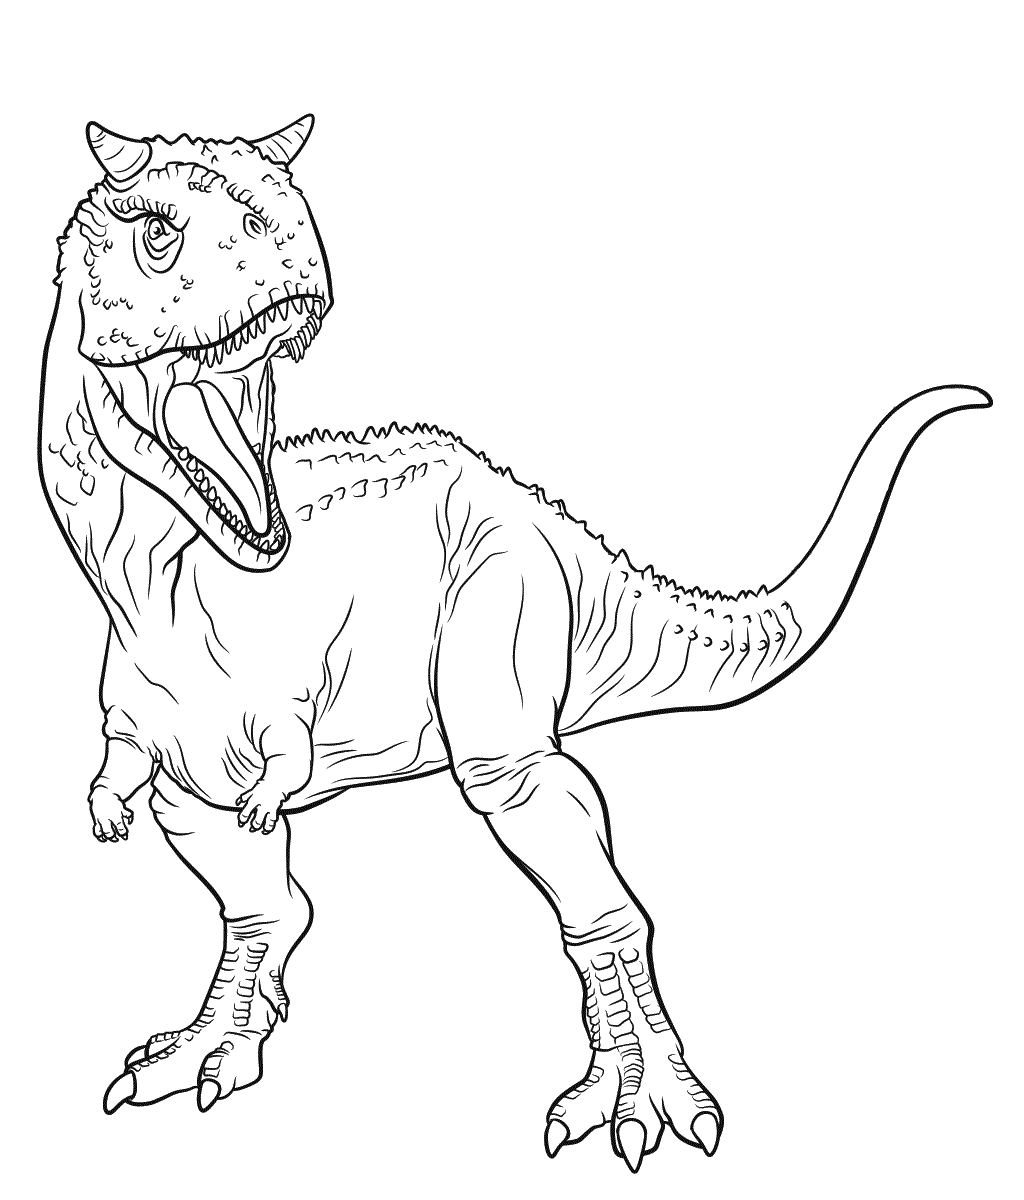 How to draw a Tyrannosaurus rex dinosaur | Science Museum of Minnesota